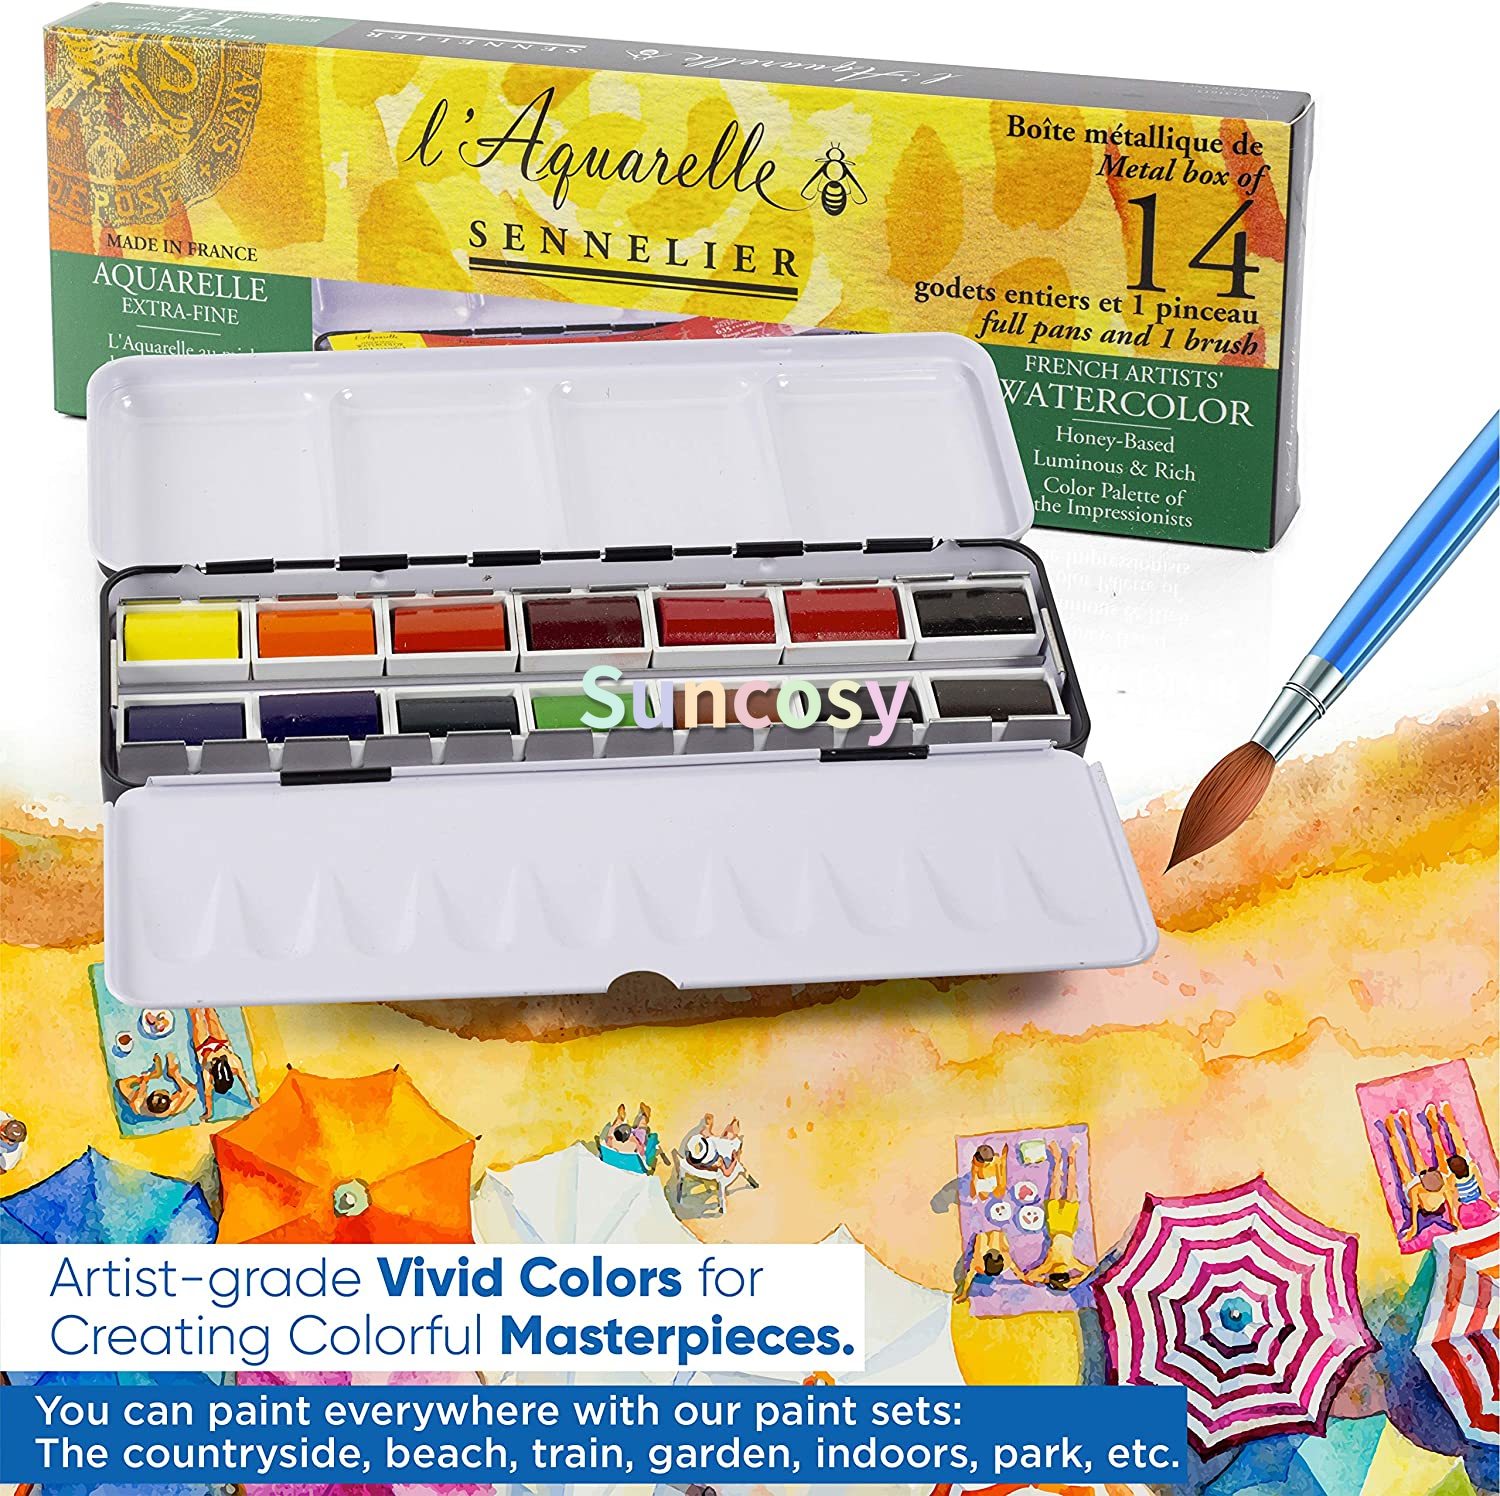 Sennelier - L'Avarelle Professional Aatercolor Paint Set 14 полных кастрюли с портативной металлической палитрой коробкой